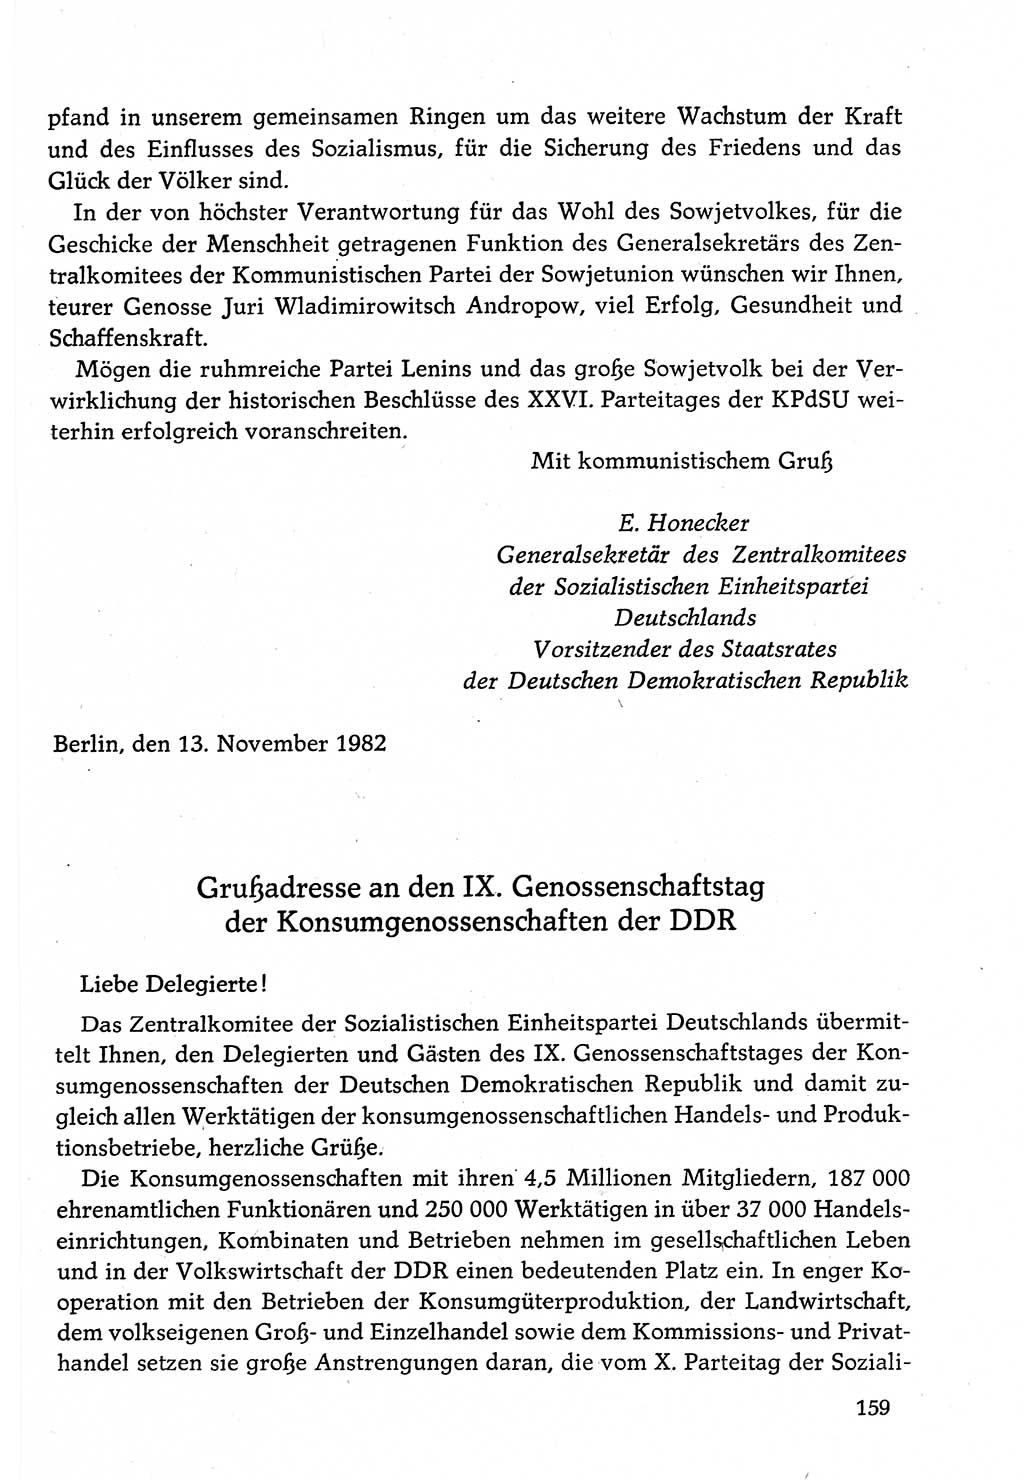 Dokumente der Sozialistischen Einheitspartei Deutschlands (SED) [Deutsche Demokratische Republik (DDR)] 1982-1983, Seite 159 (Dok. SED DDR 1982-1983, S. 159)